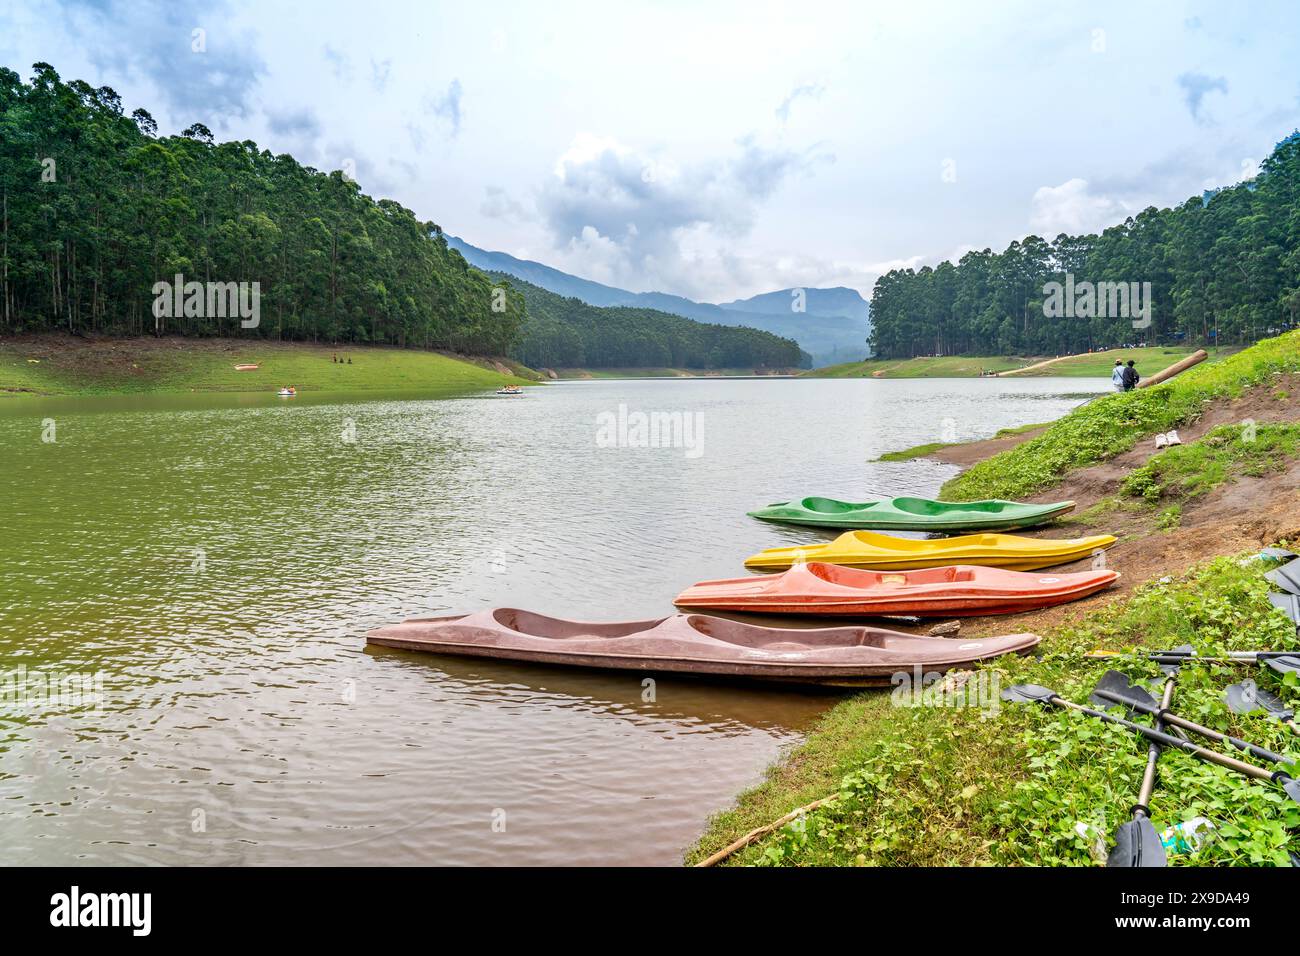 Mattupetty Dam, près de Munnar dans le district d'Idukki, est un barrage gravitaire en béton construit dans les montagnes du Kerala, en Inde Banque D'Images